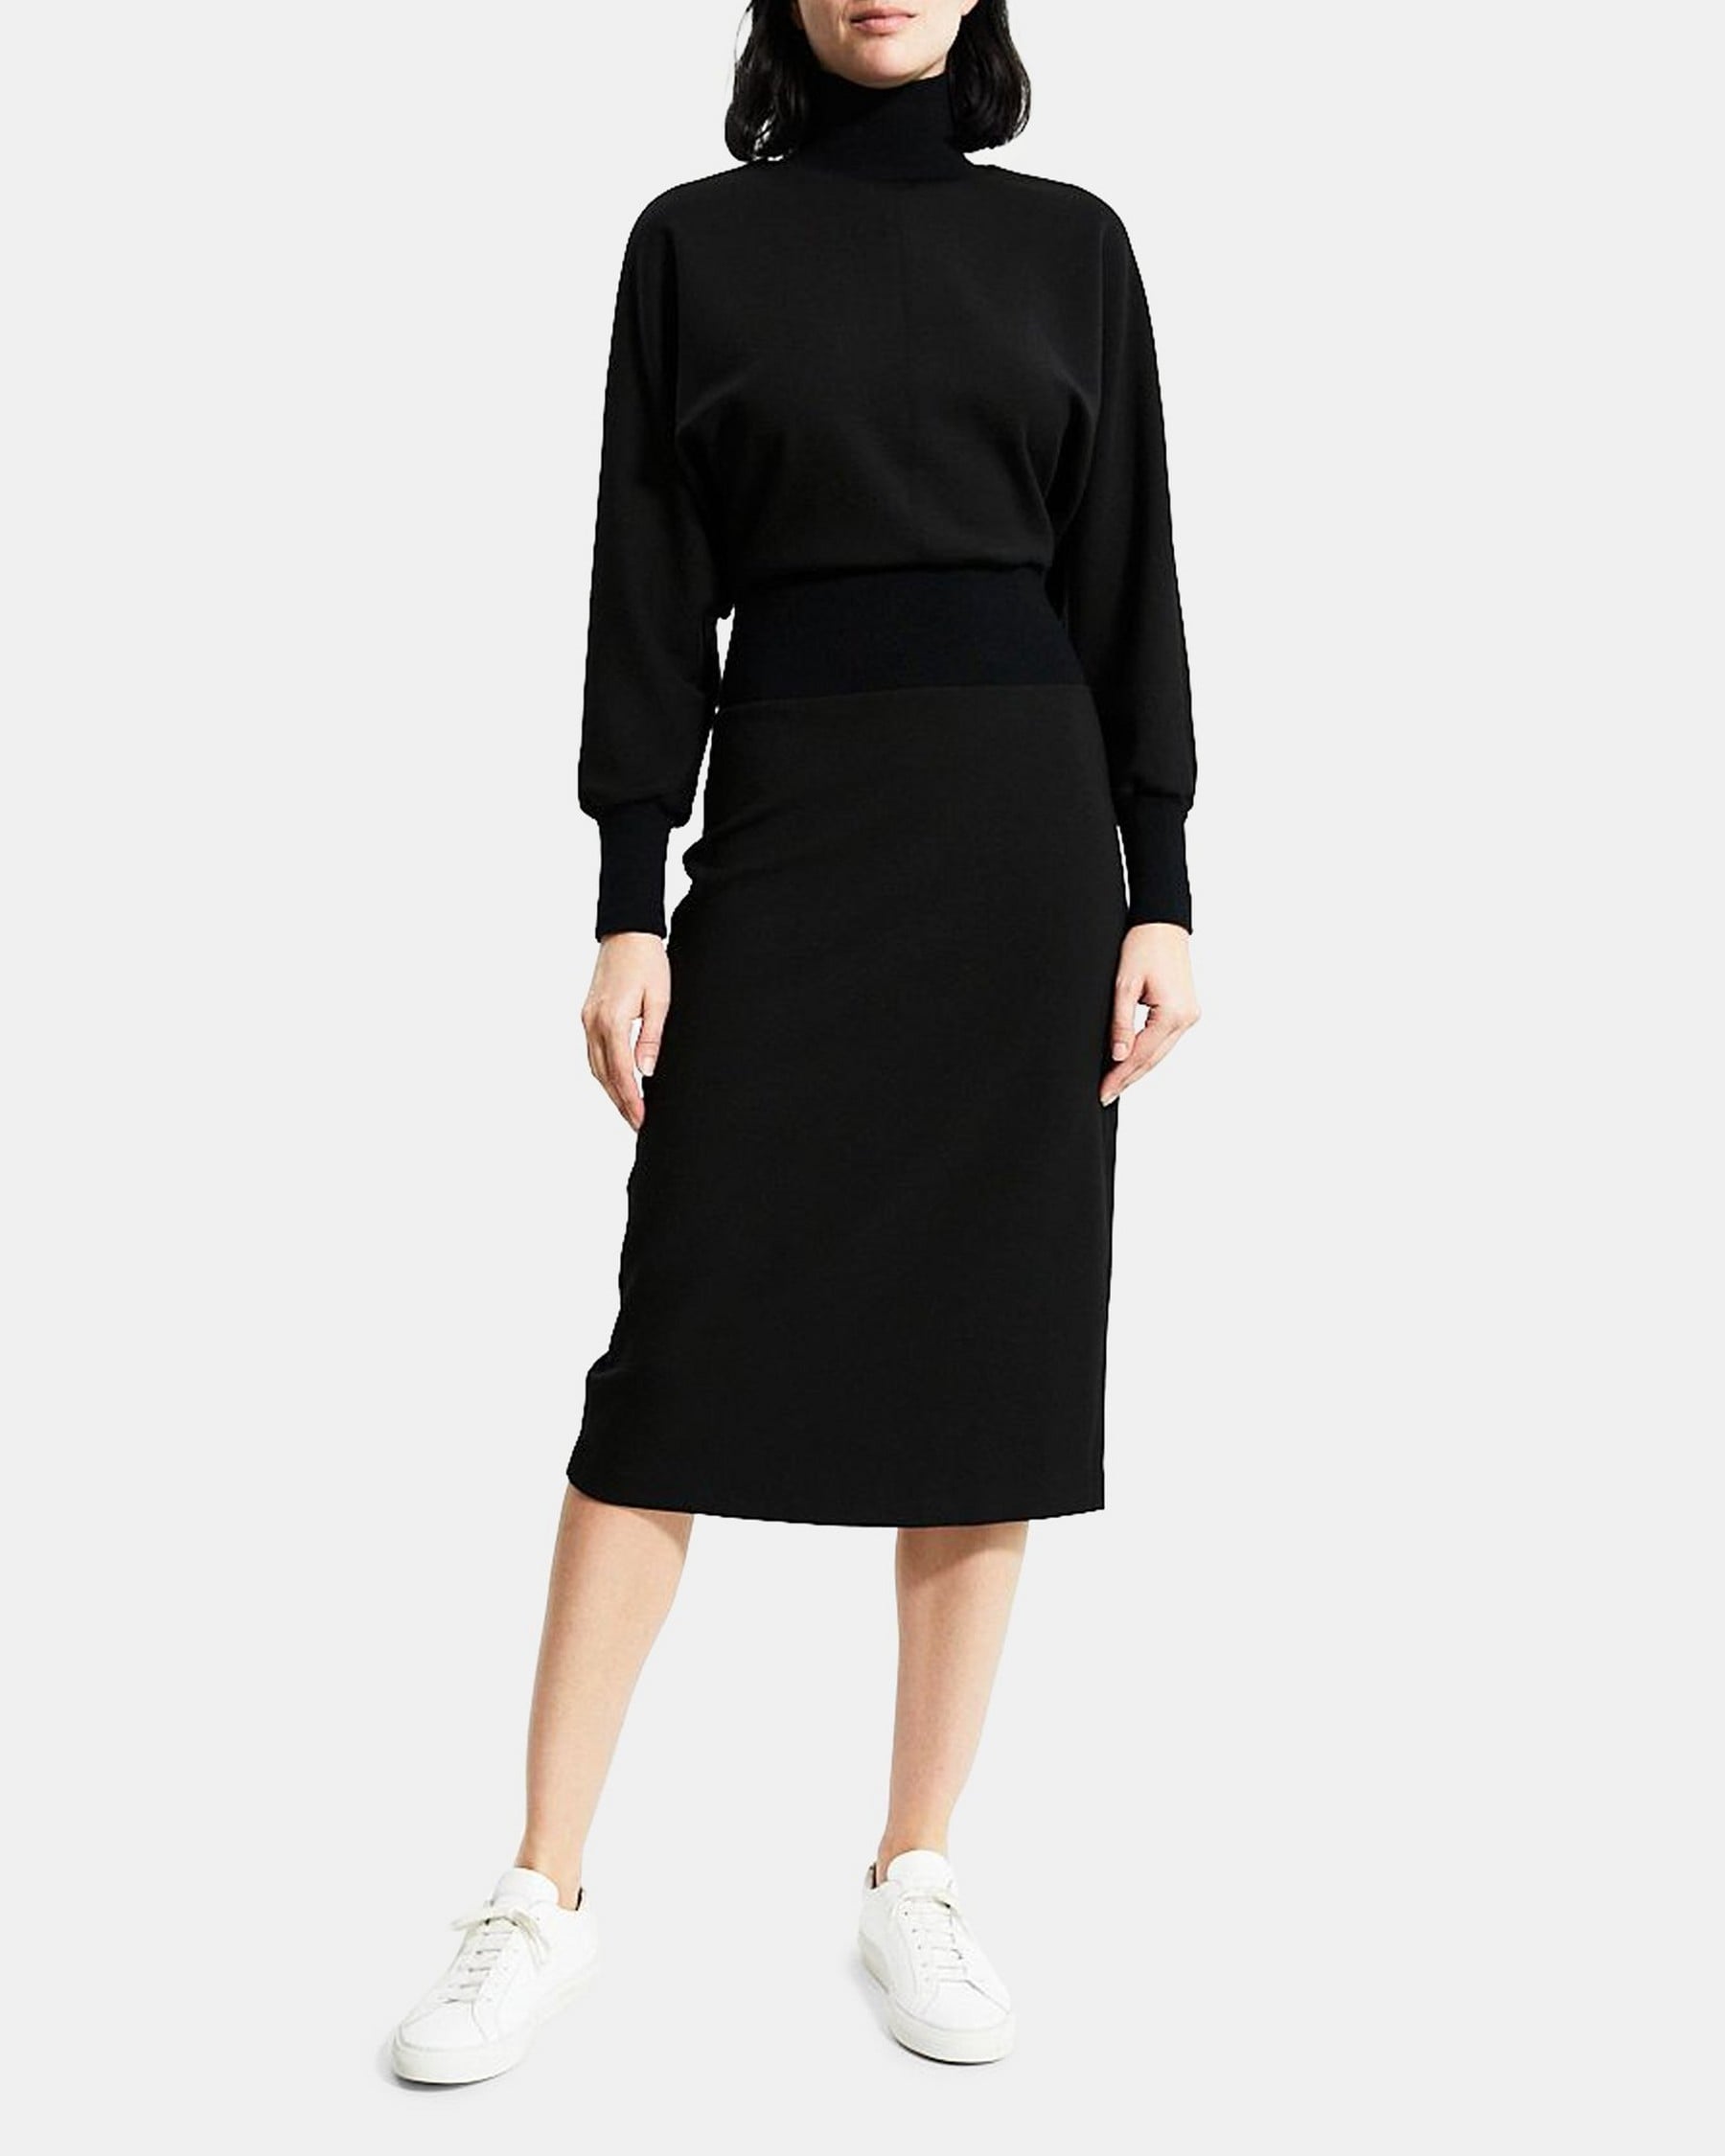 띠어리 Theory Turtleneck Dress in Double-Knit Jersey,BLACK